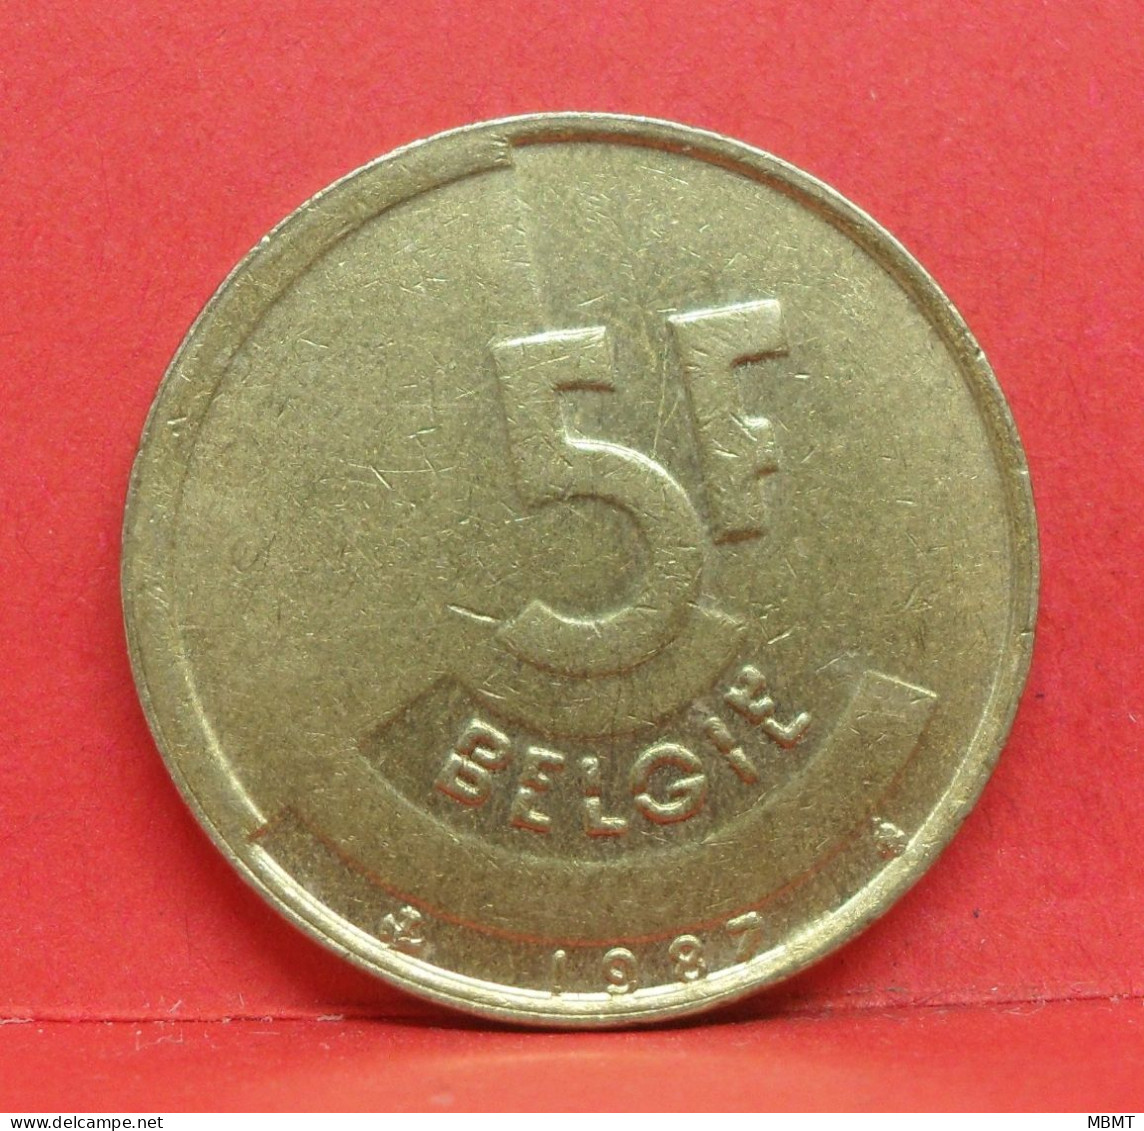 5 Frank 1987 - TTB - Pièce Monnaie Belgie - Article N°2002 - 5 Francs